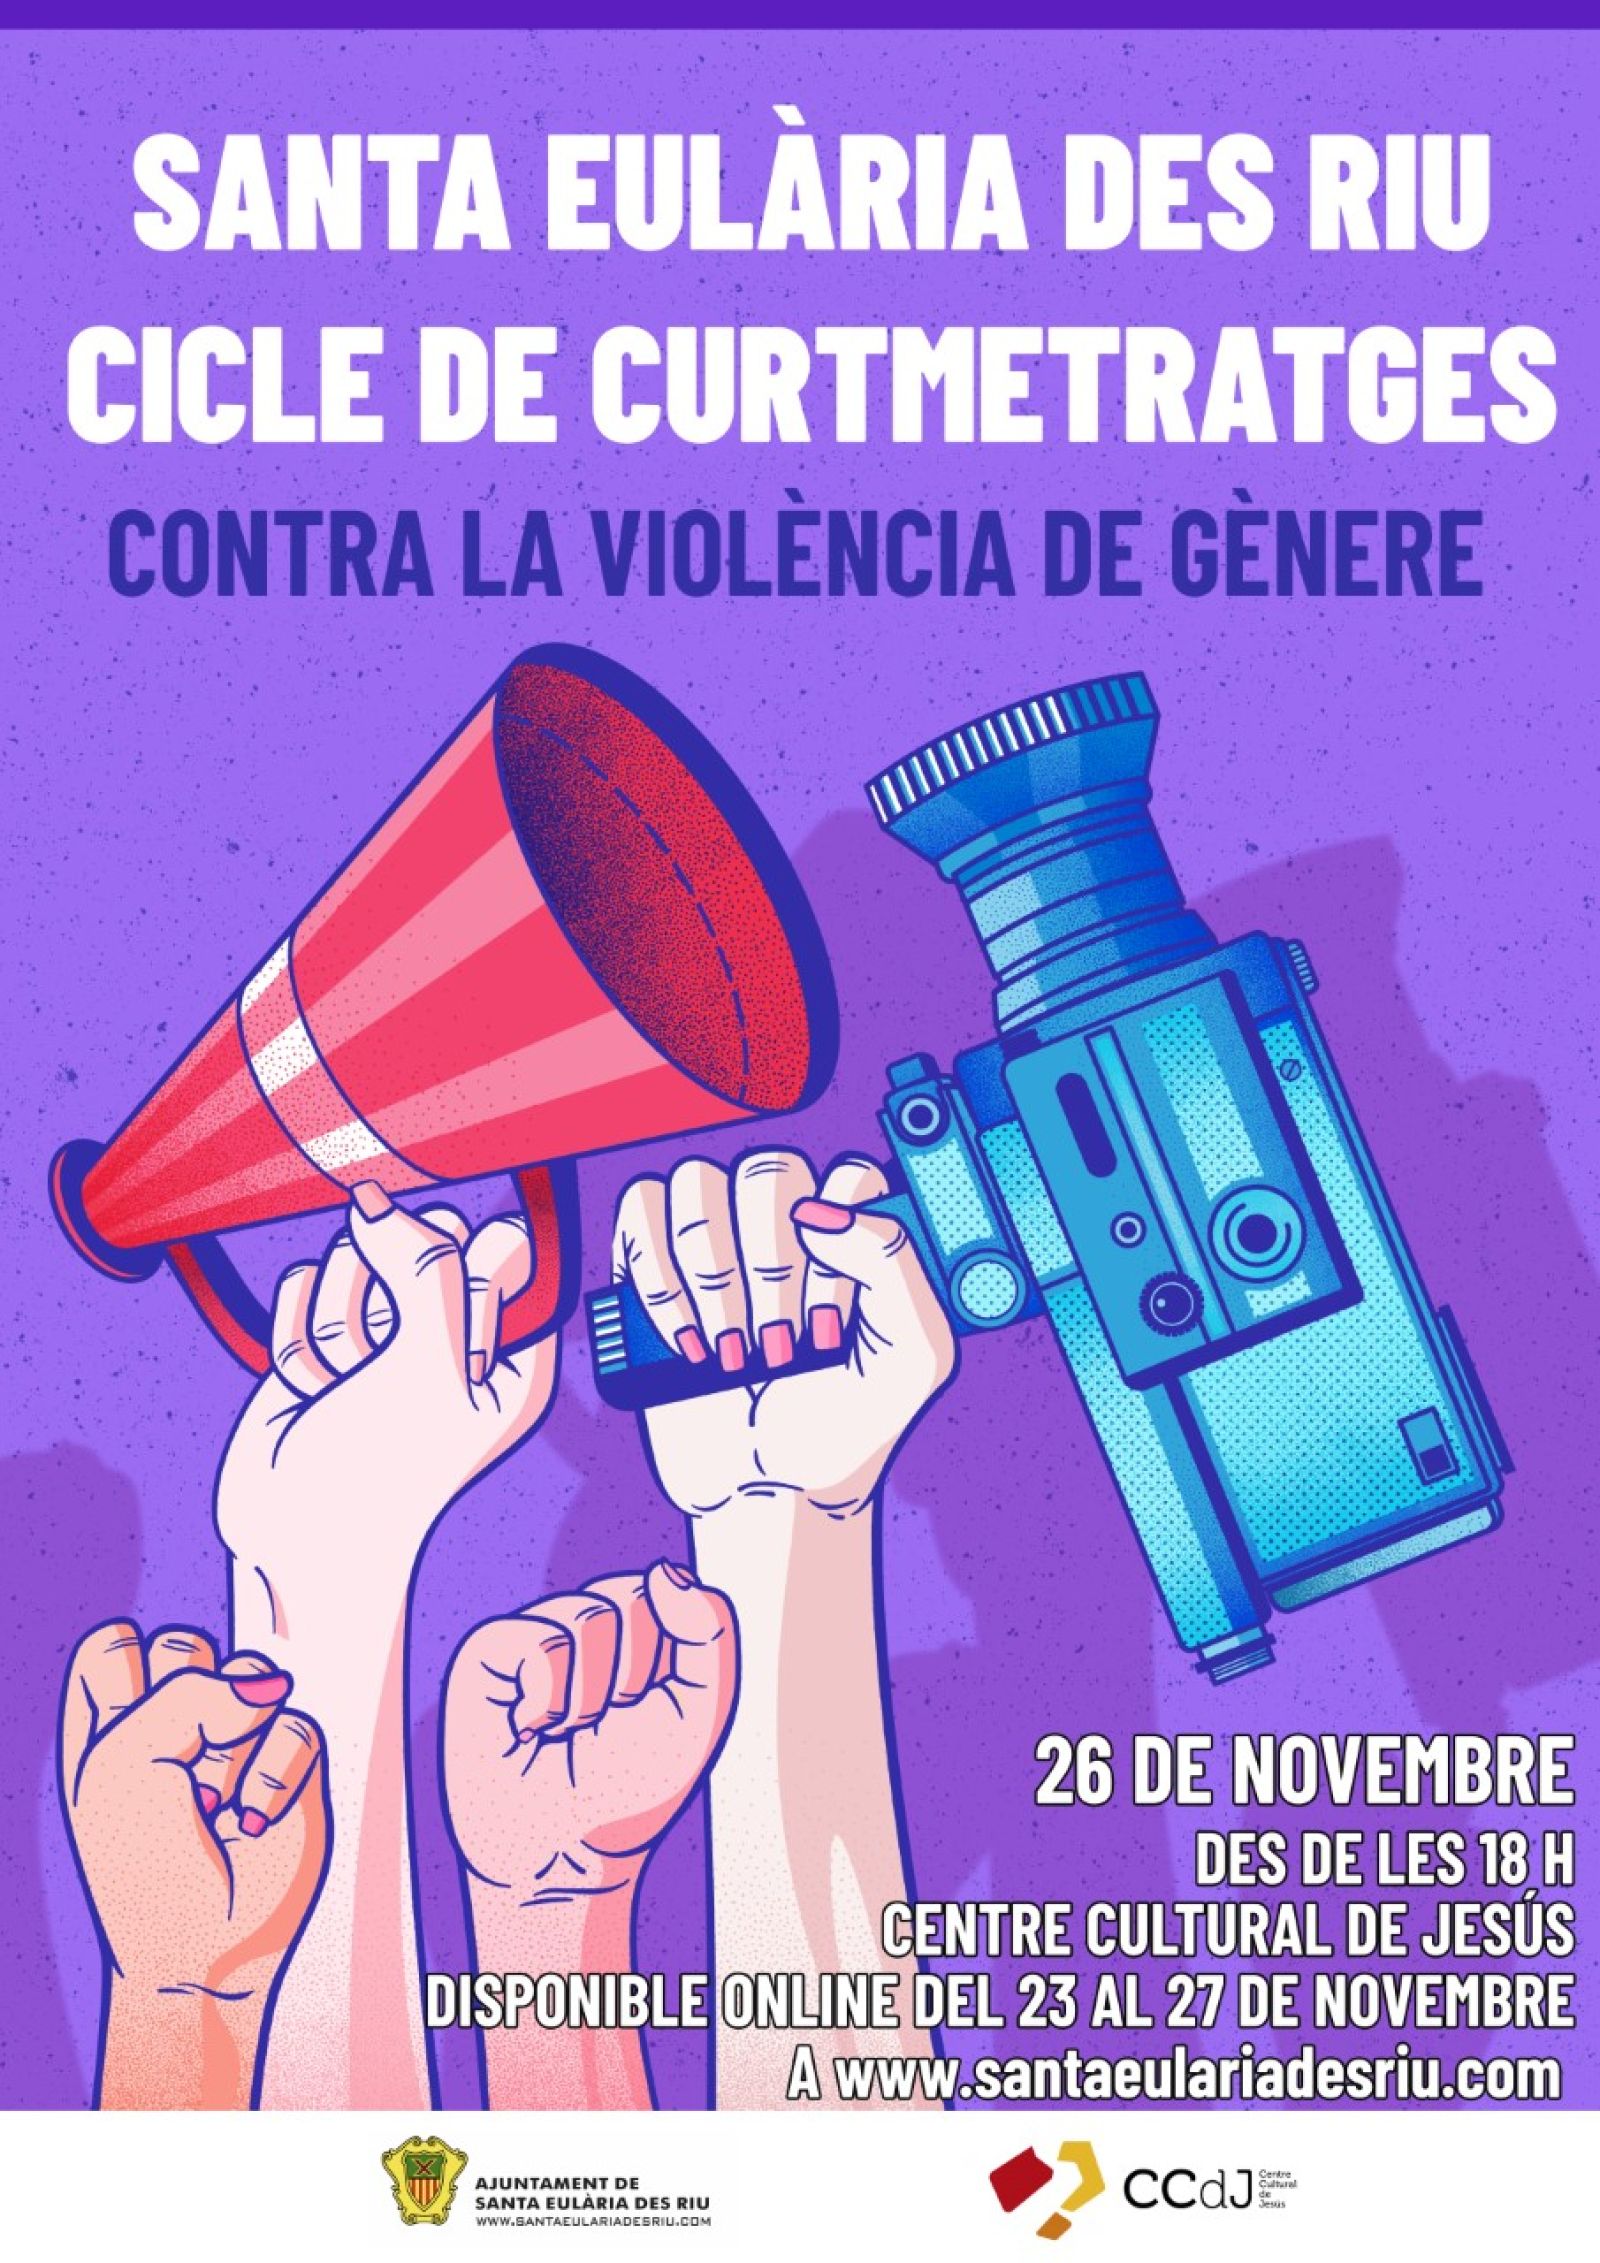 Santa Eulària des Riu organiza actividades juveniles, proyecciones y un taller de autodefensa con motivo del Día Internacional de la Eliminación de la Violencia Contra la Mujer